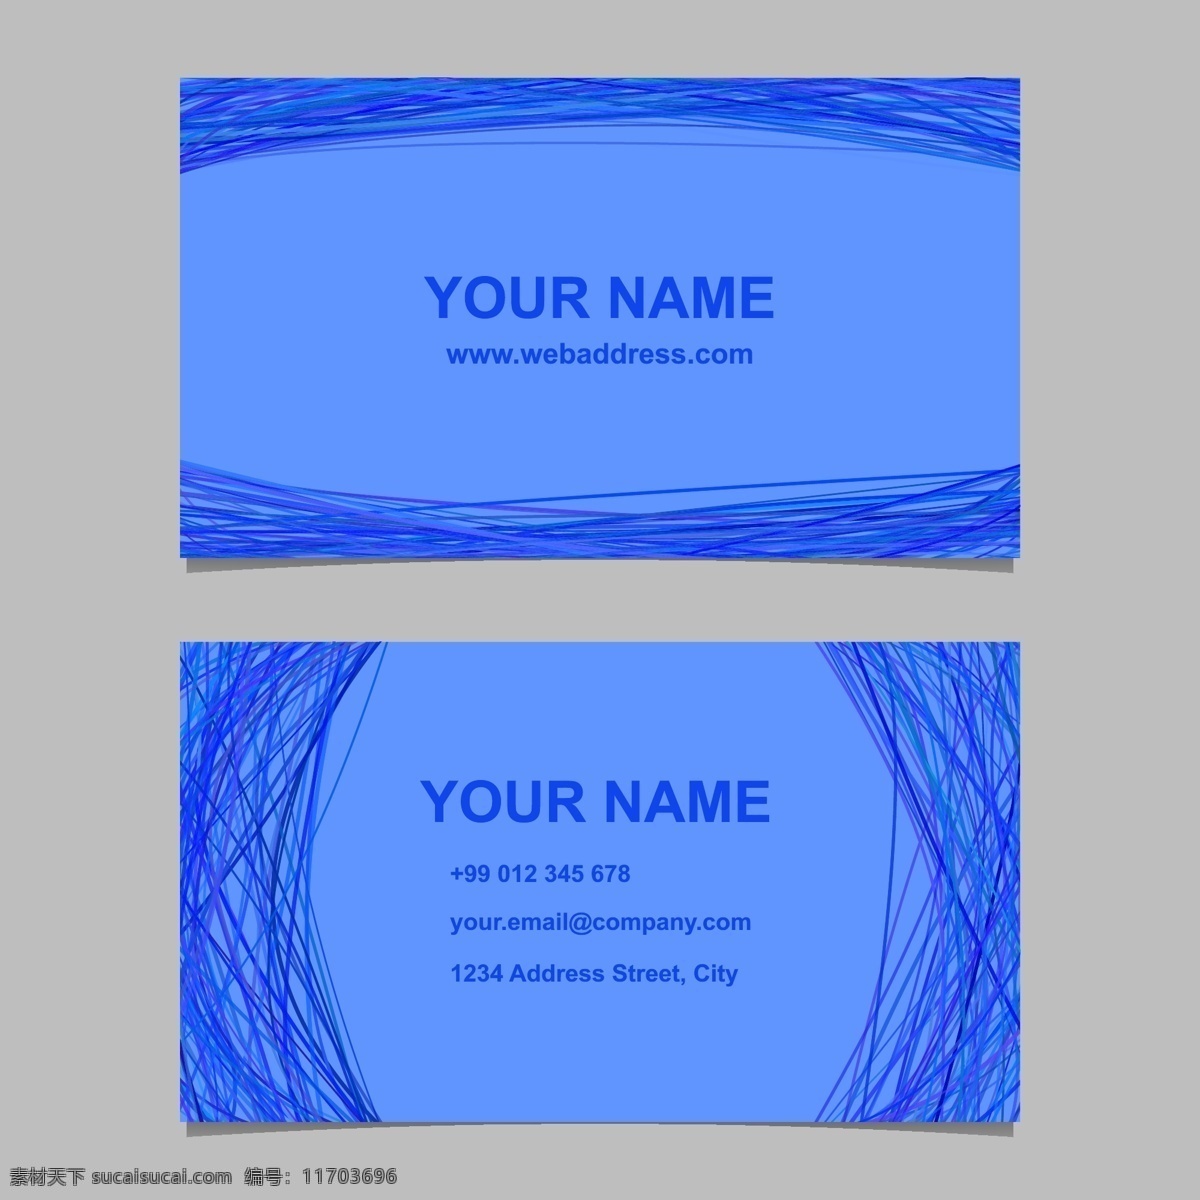 蓝色 名片 模板 集 矢量 身份证 插图 曲线 背景 抽象背景 框架 商务 请柬 抽象 卡片 边界 蓝色背景 电话 线条 布局 id卡 颜色 蝴蝶结